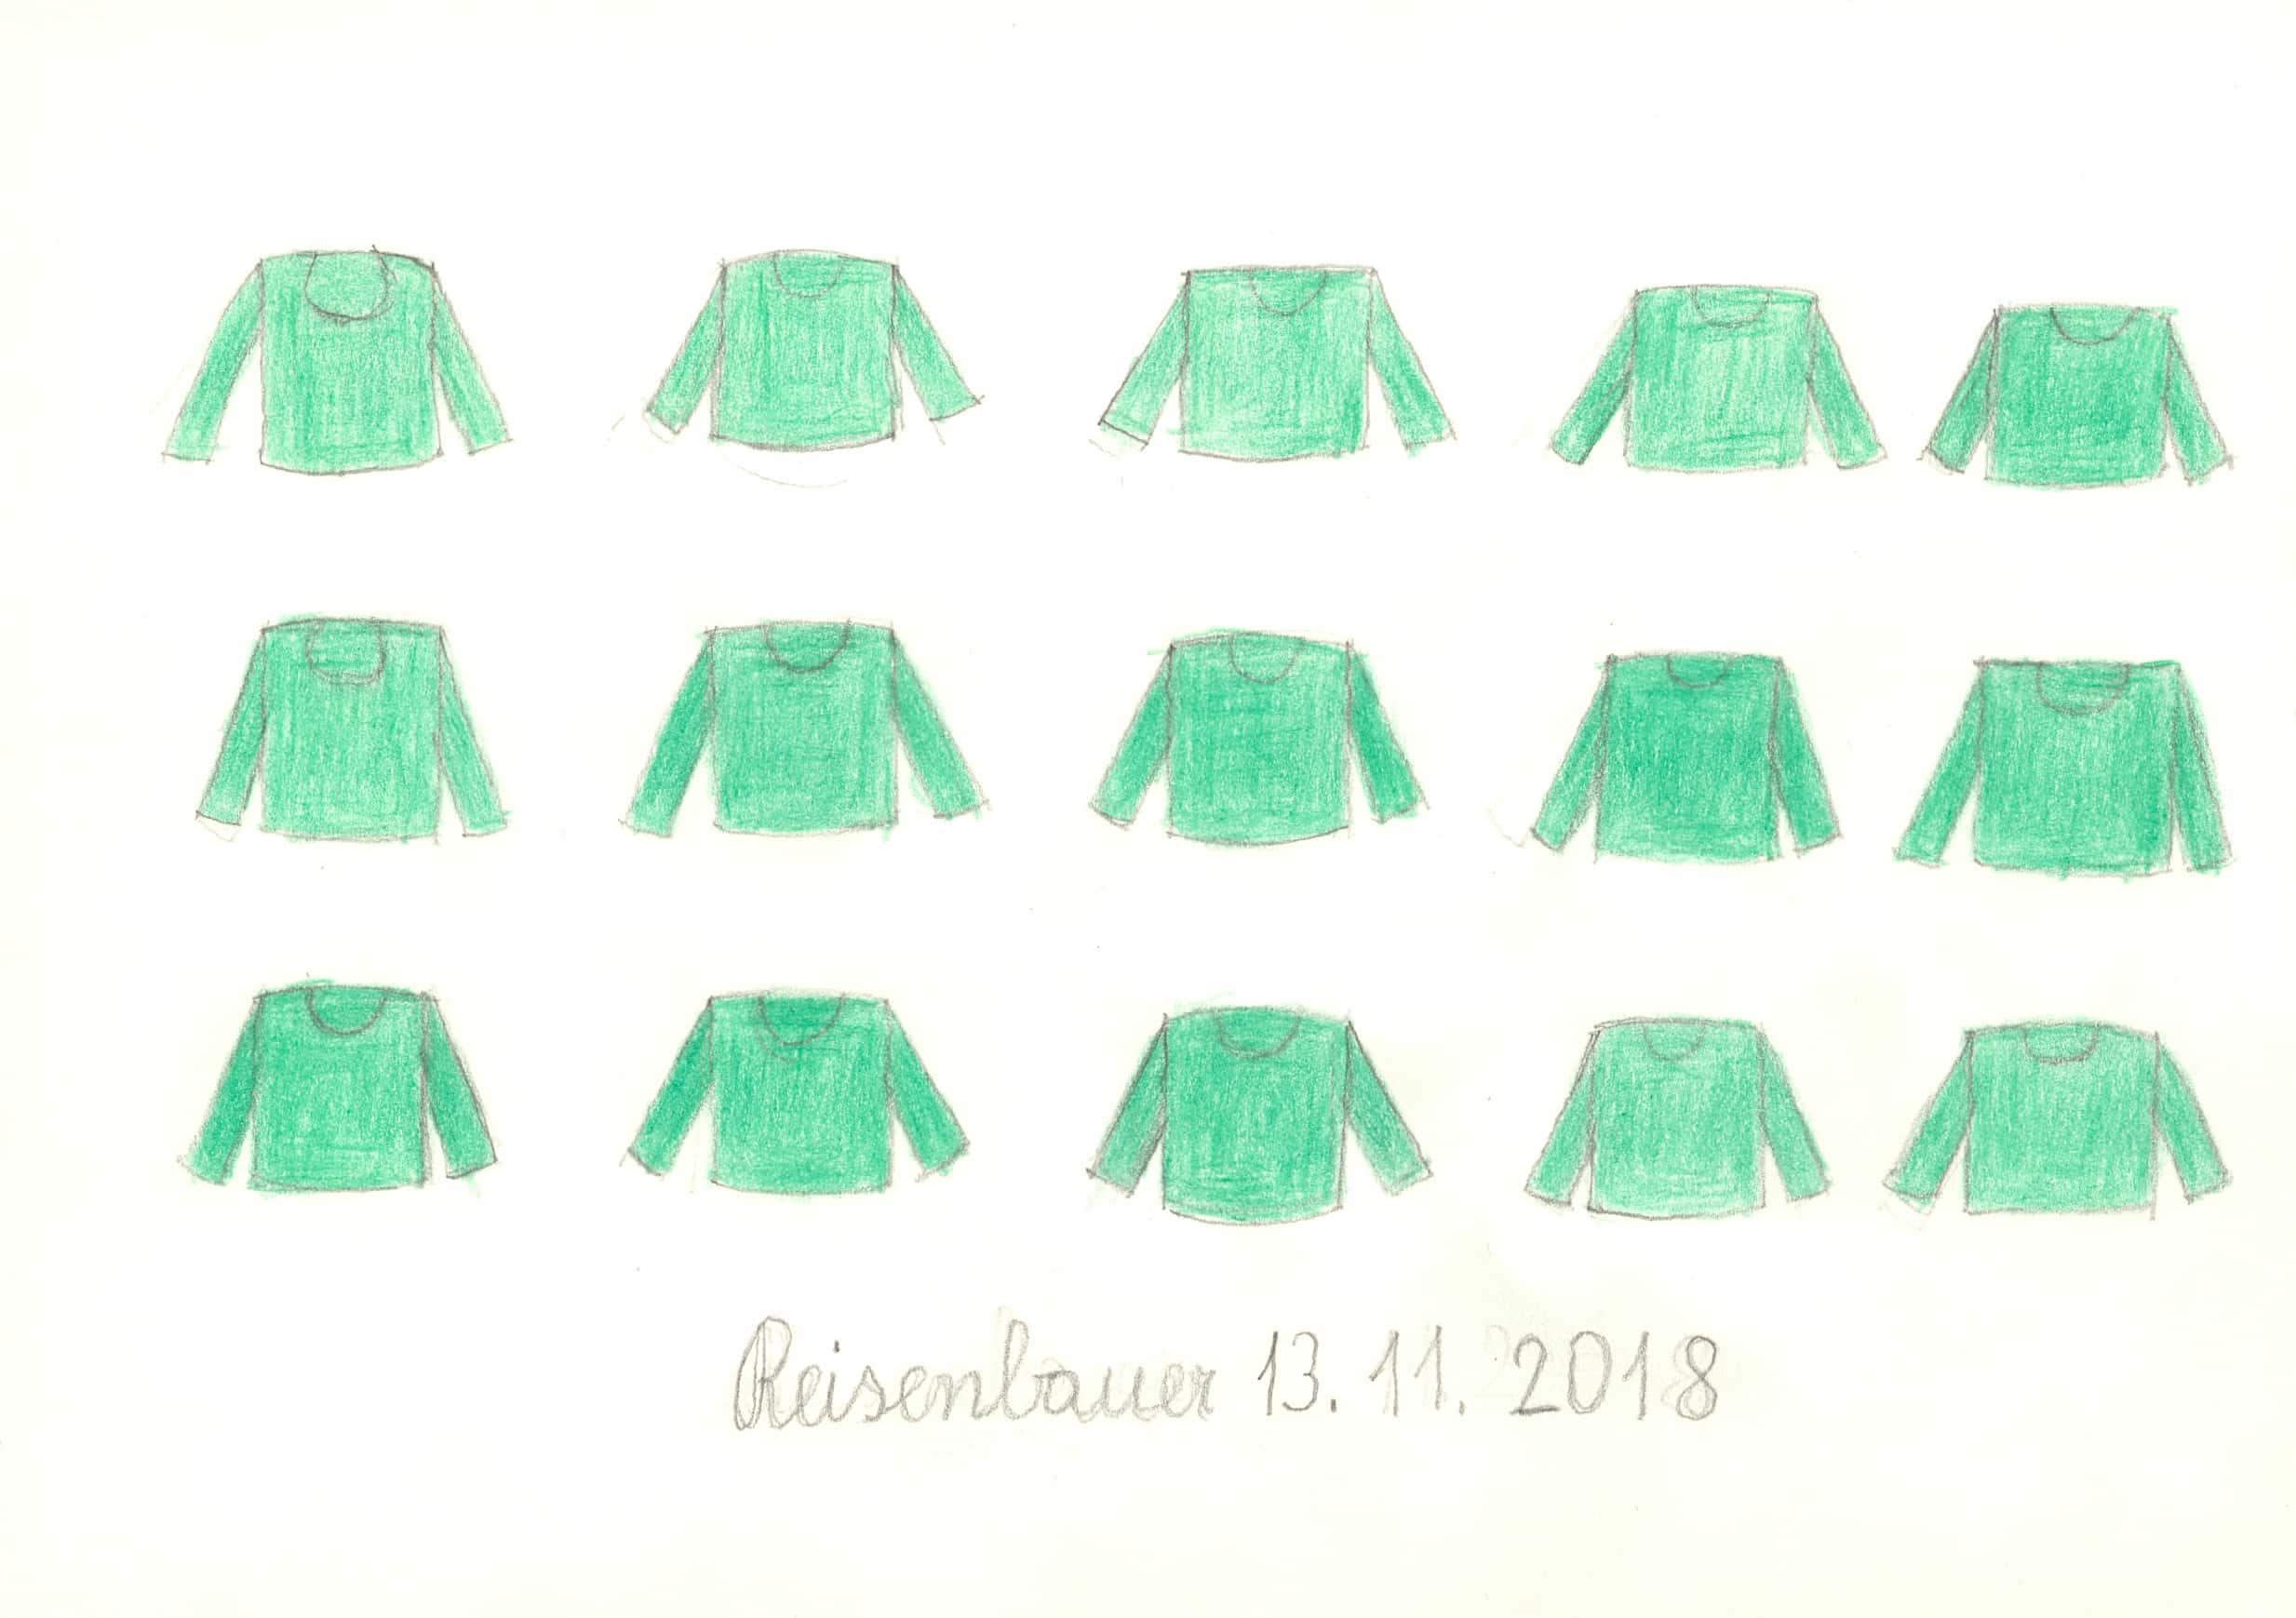 reisenbauer heinrich - Pullover / Sweaters